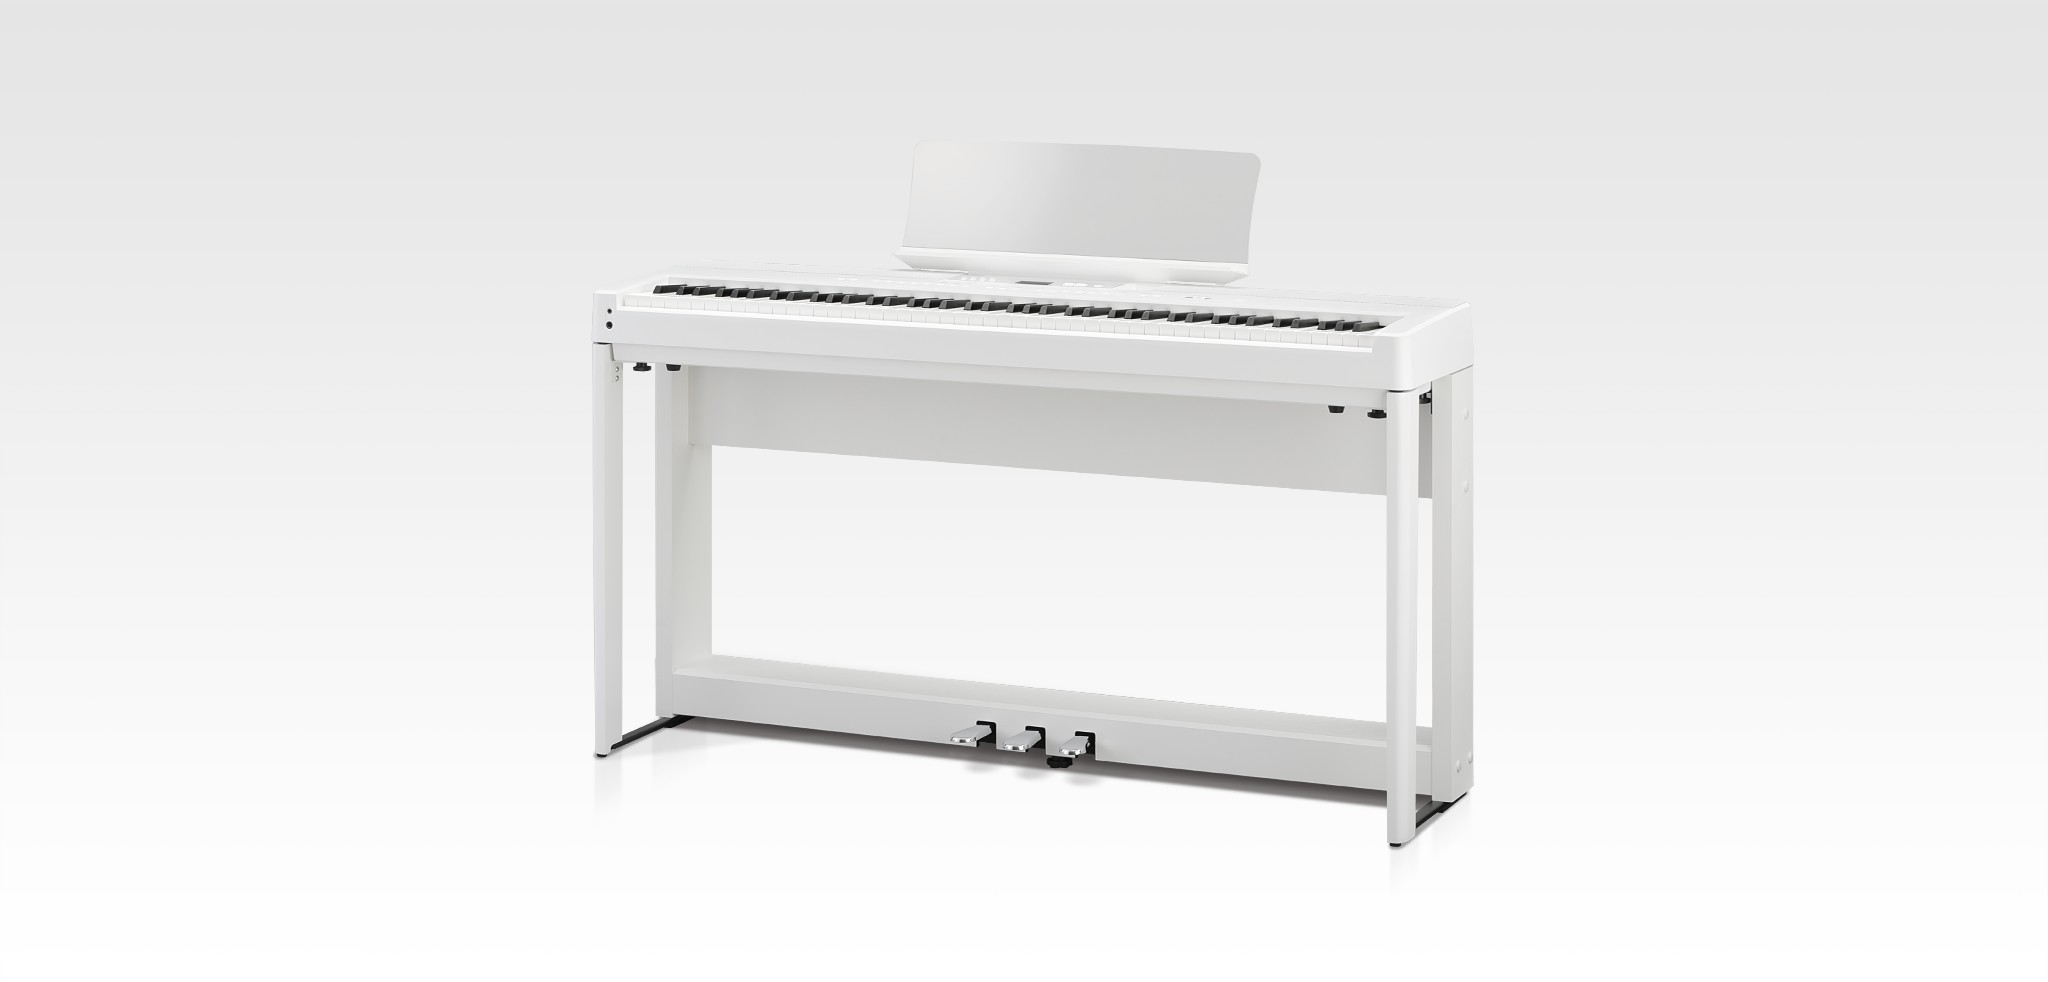 Piano Digital Portátil ES920  Em casa, no palco, leve sua música